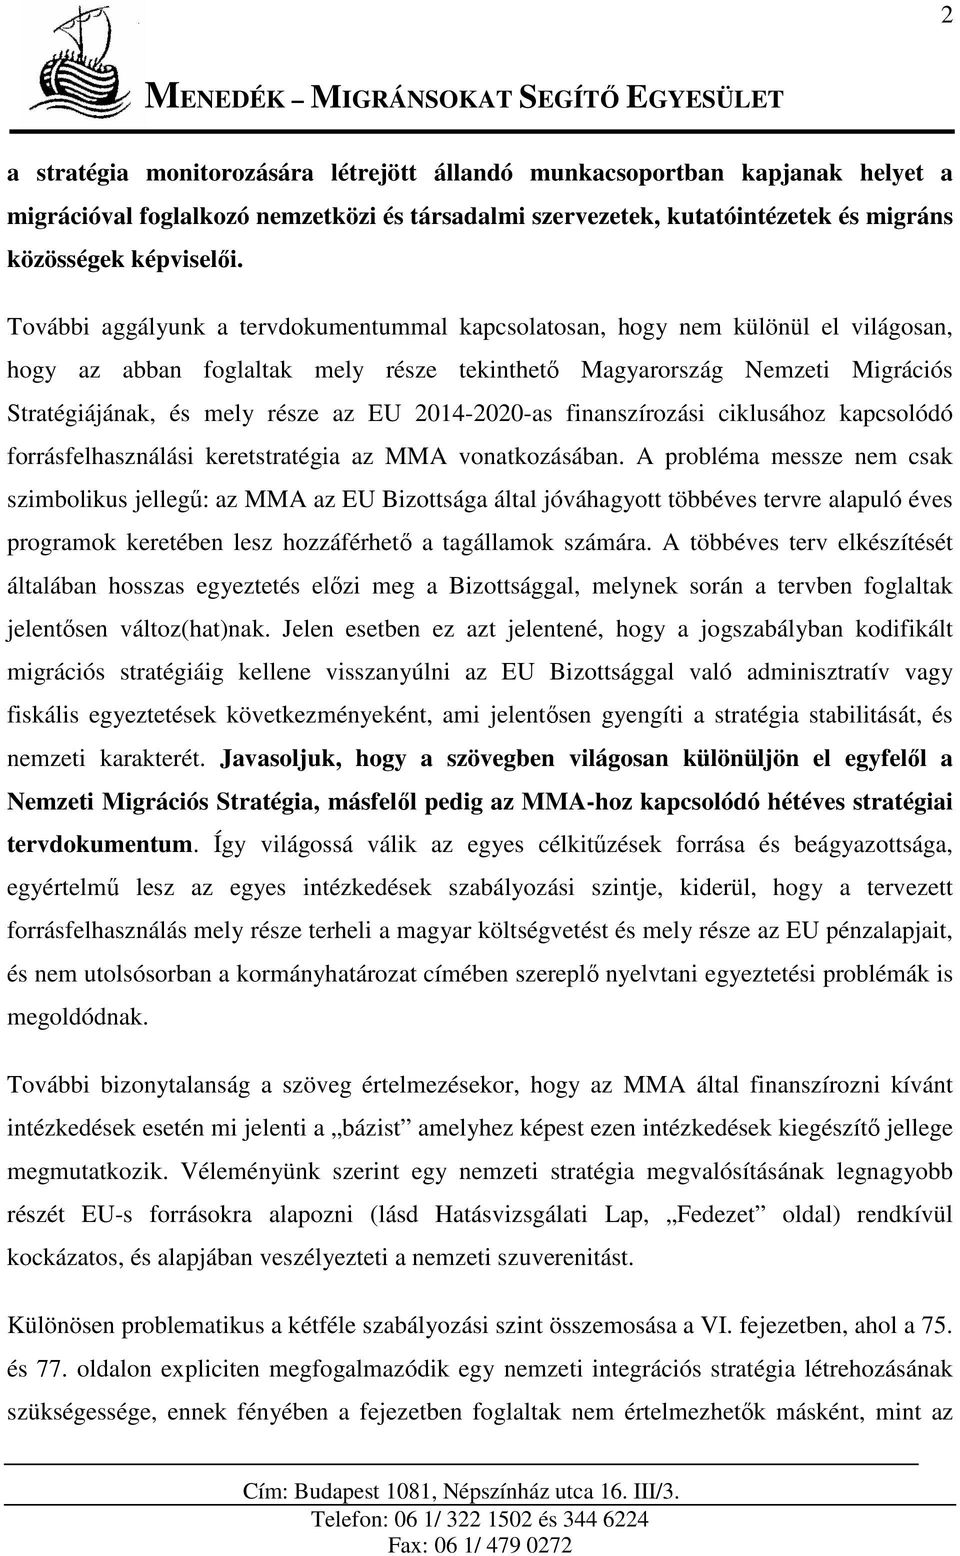 MENEDÉK MIGRÁNSOKAT SEGÍTŐ EGYESÜLET - PDF Free Download